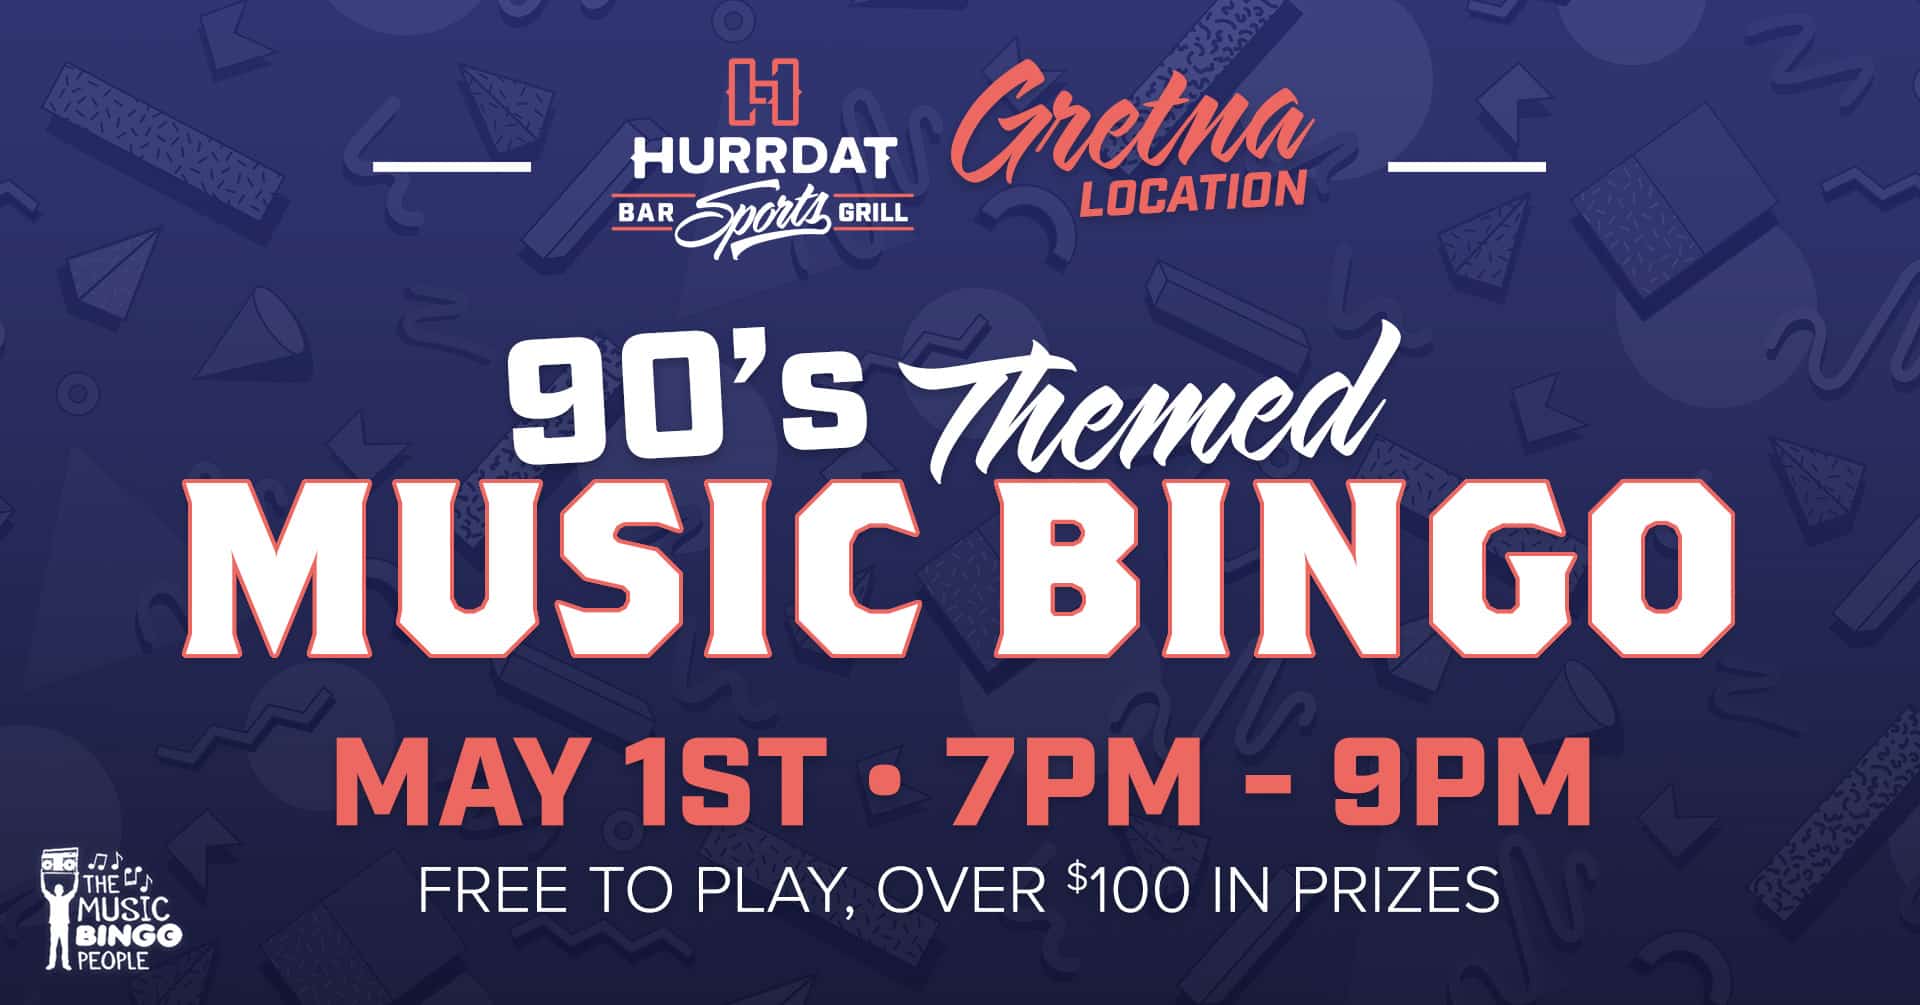 90s Themed Music Bingo in Gretna